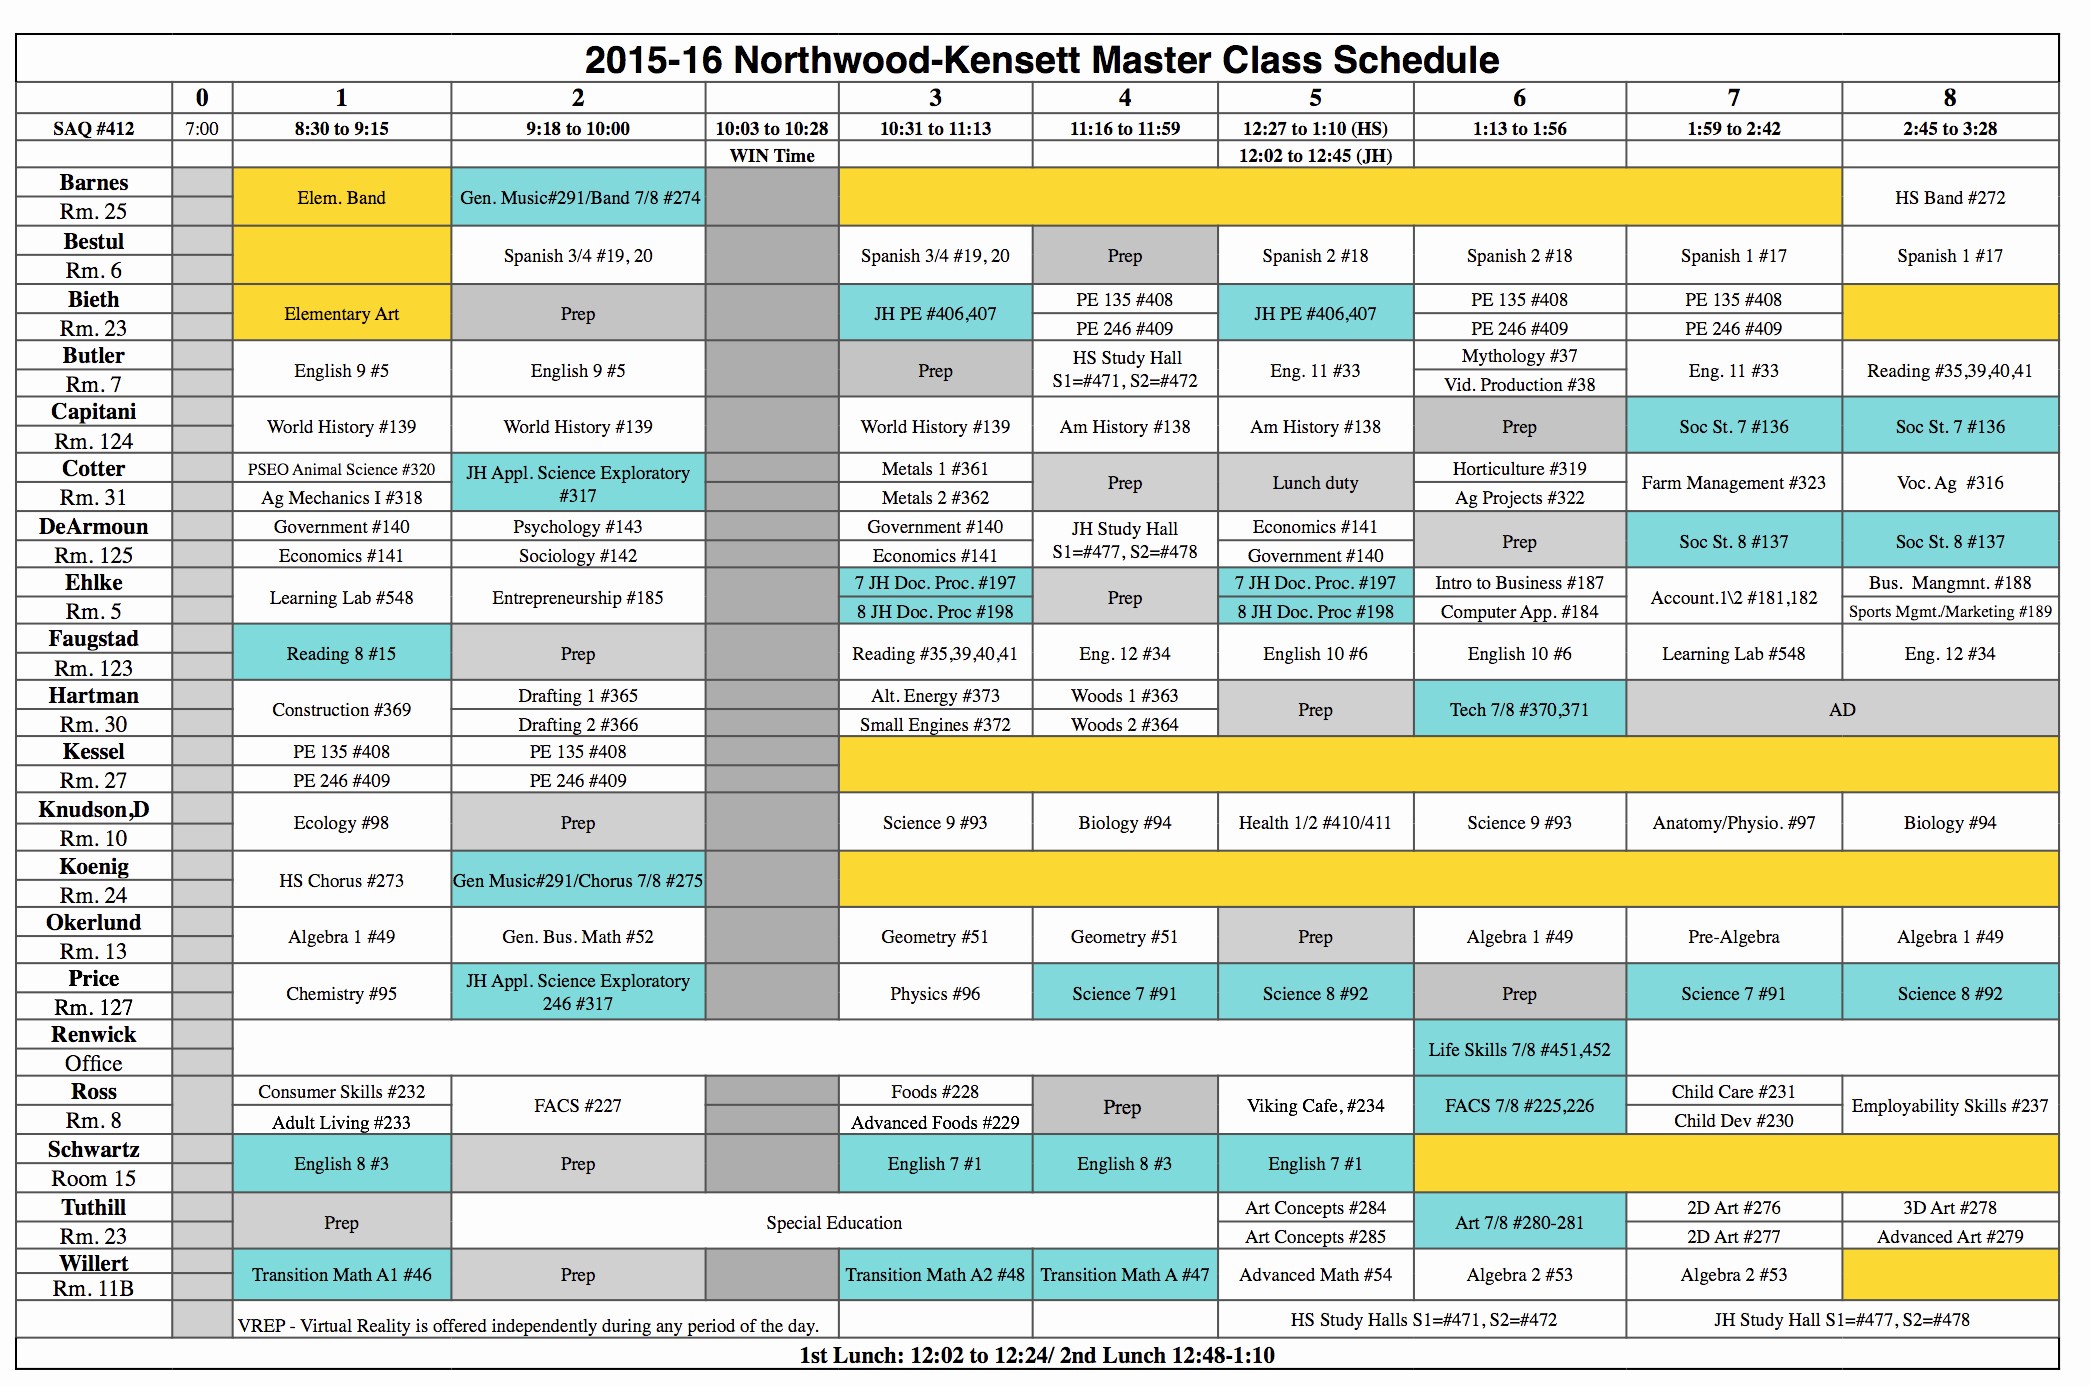 High School Class Schedule Example Luxury northwood Kensett 2015 2016 High School Class Schedule